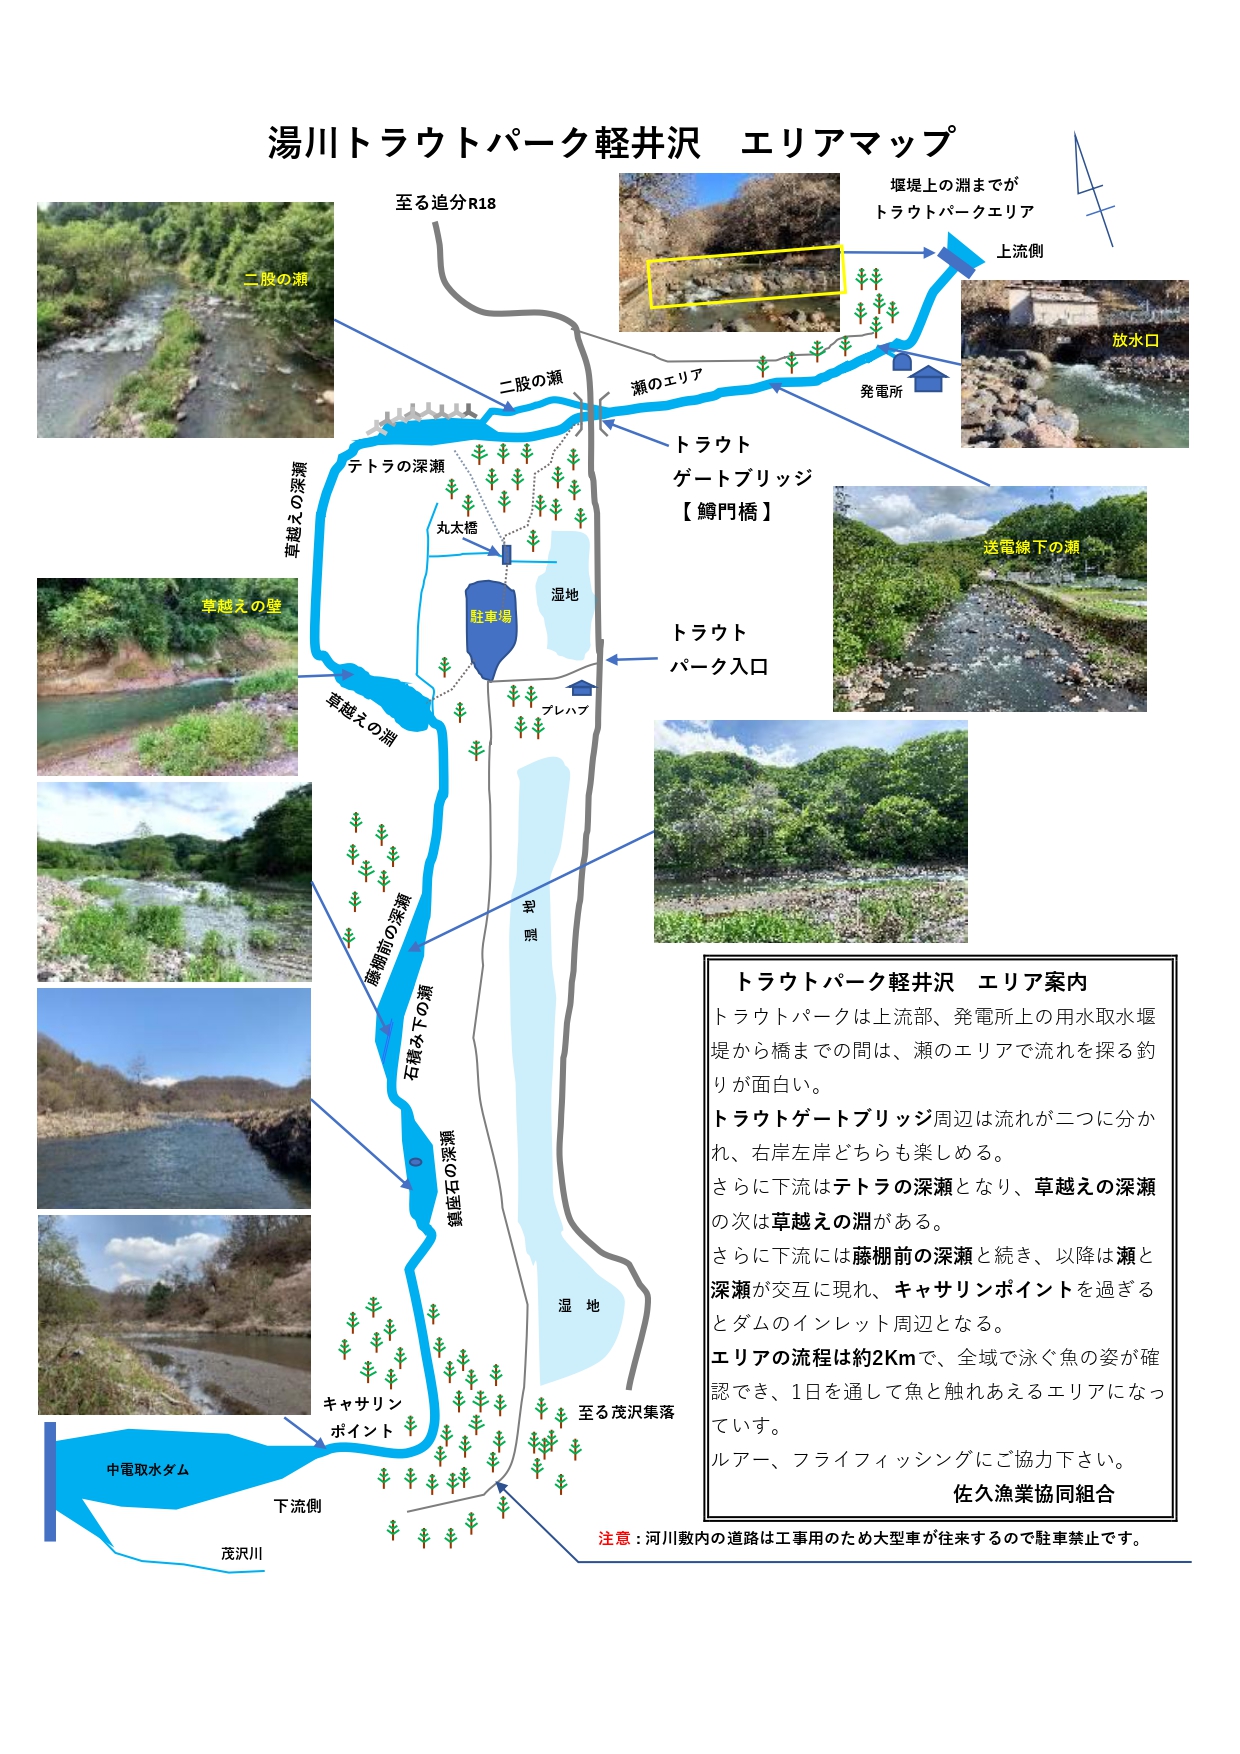 湯川トラウトパーク軽井沢エリアマップを更新しました 佐久漁業協同組合